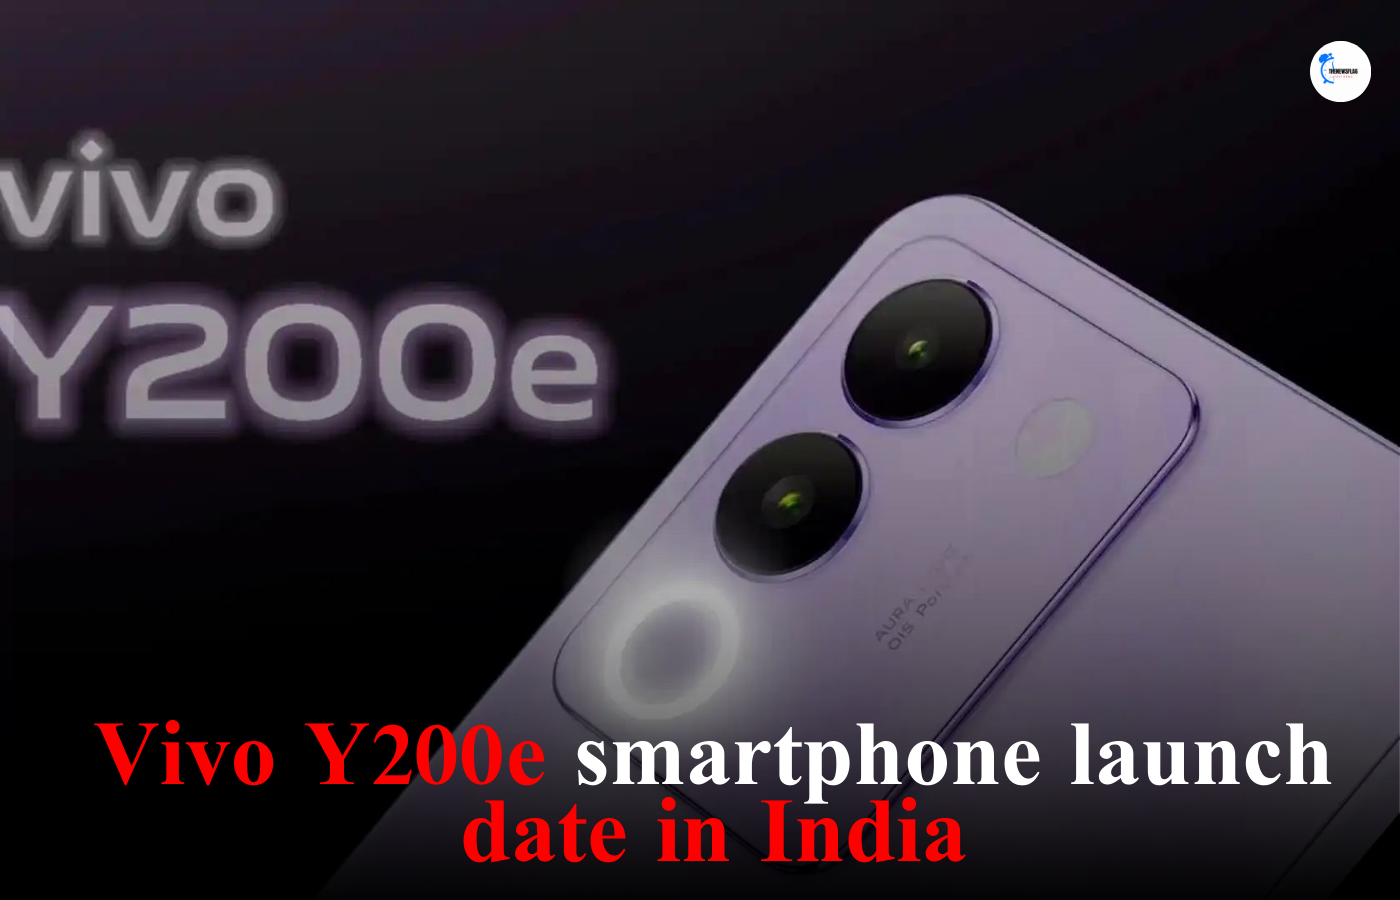 Vivo Y200e smartphone launch date in India